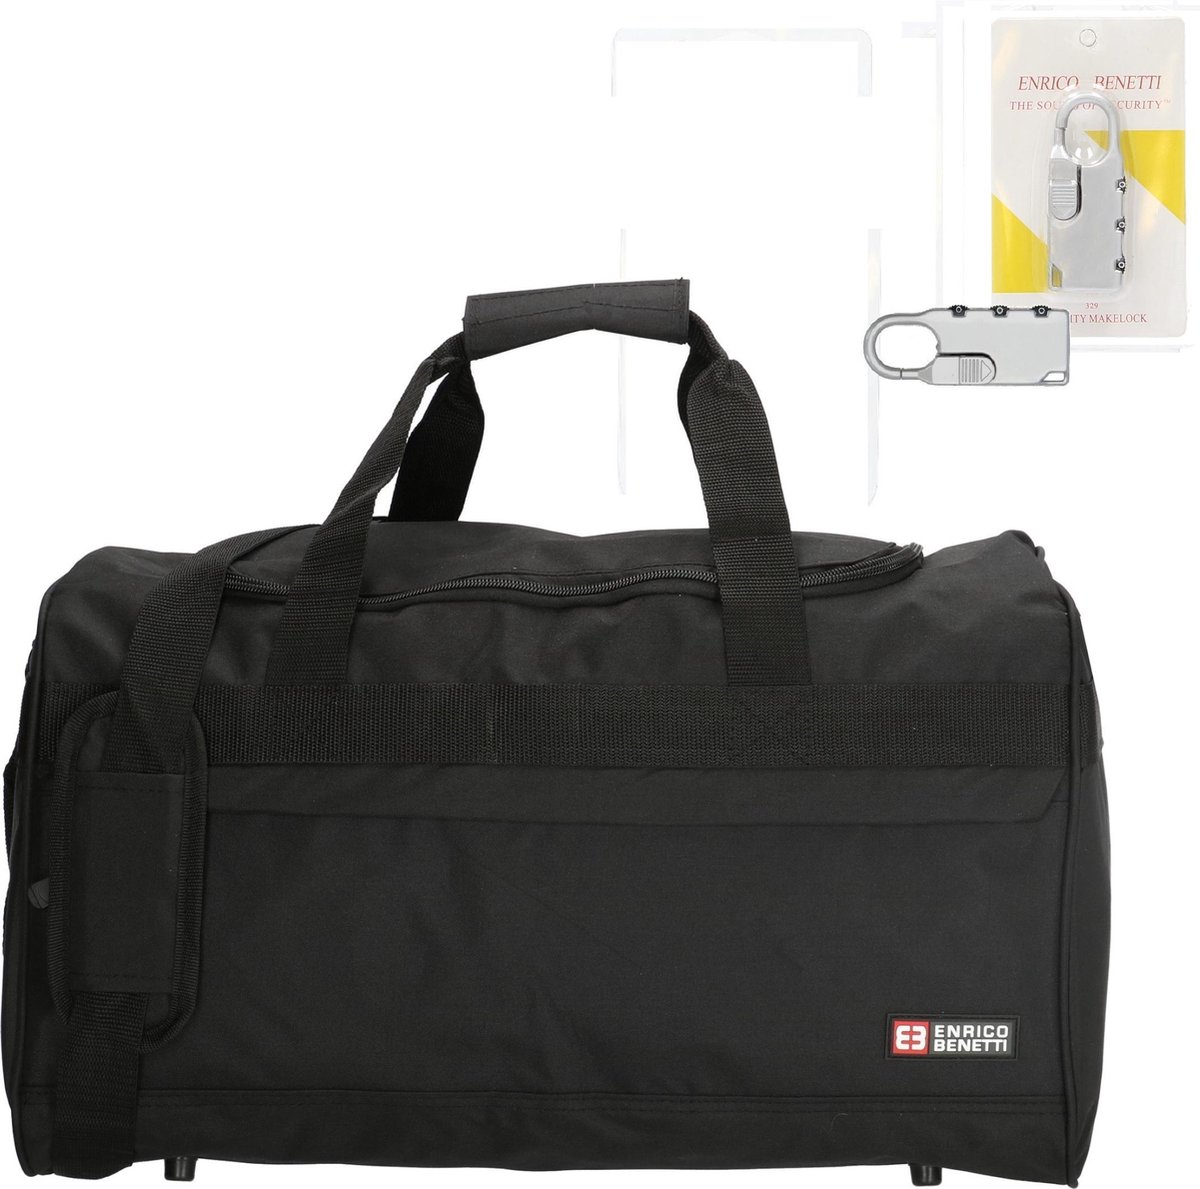 Tassen & portemonnees Bagage & Reizen Weekendtassen Handbagage Tas Business Bag Weekender Handgemaakte Handtas Reistas voor Vliegtuig Flight Bag Zwart 